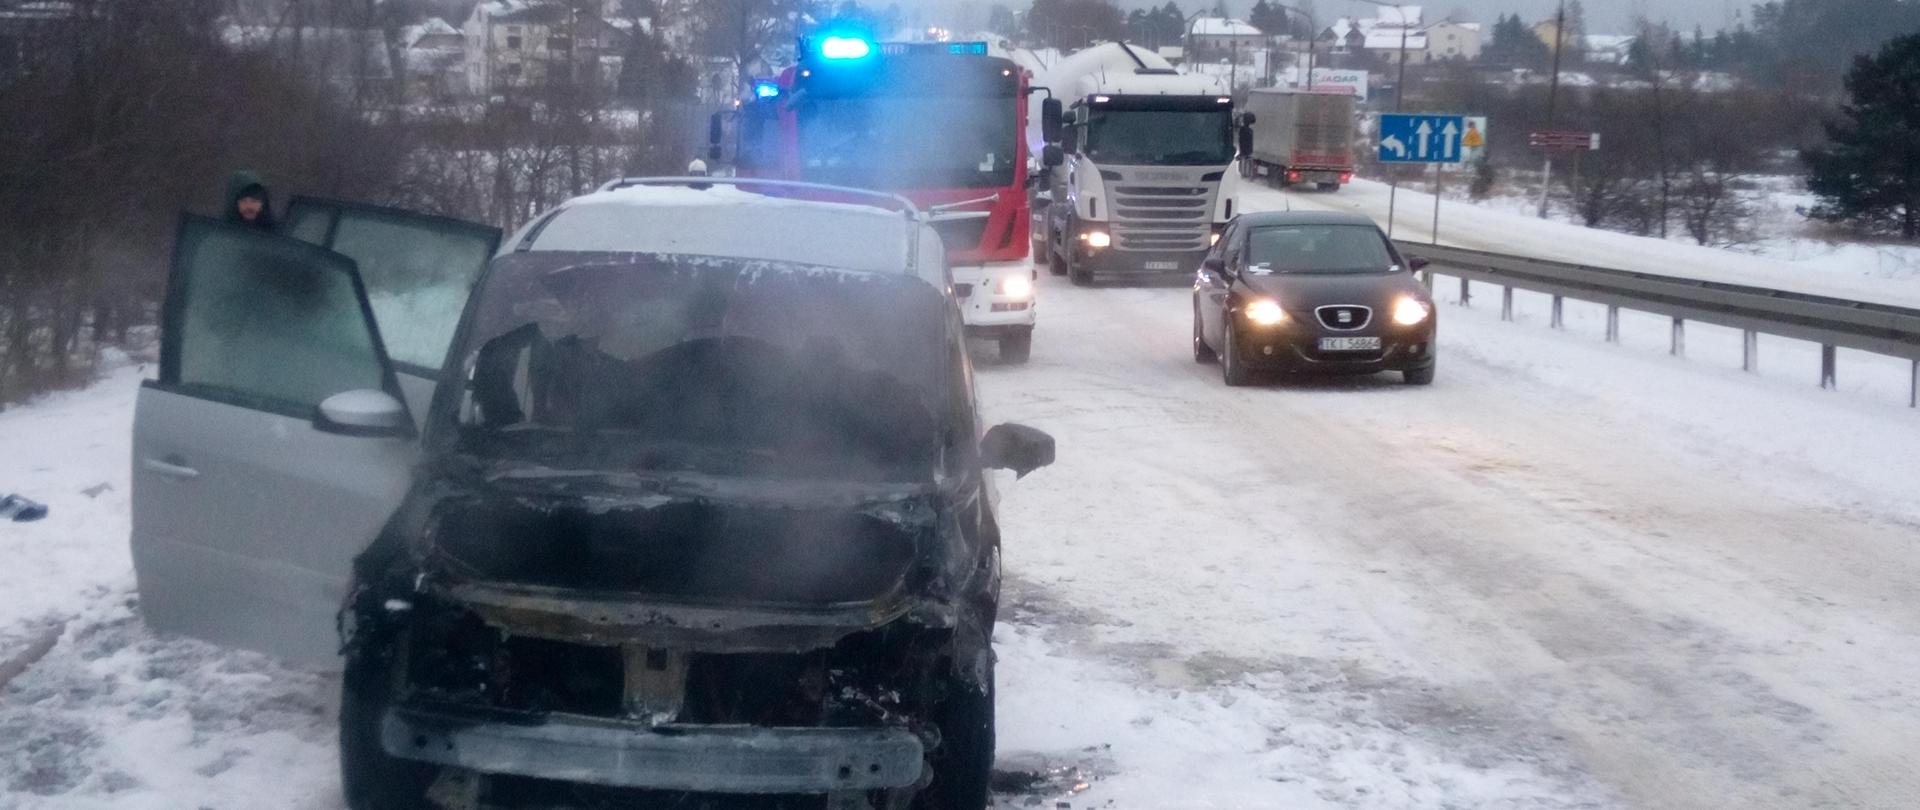 Na zdjęciu znajduje się spalony samochód marki Renault. Ma otwarte prawe drzwi - z jego wnętrza wydobywa się jeszcze dym. W tle
samochód straży pożarnej na sygnałach. Jezdnia jest cała w śniegu.